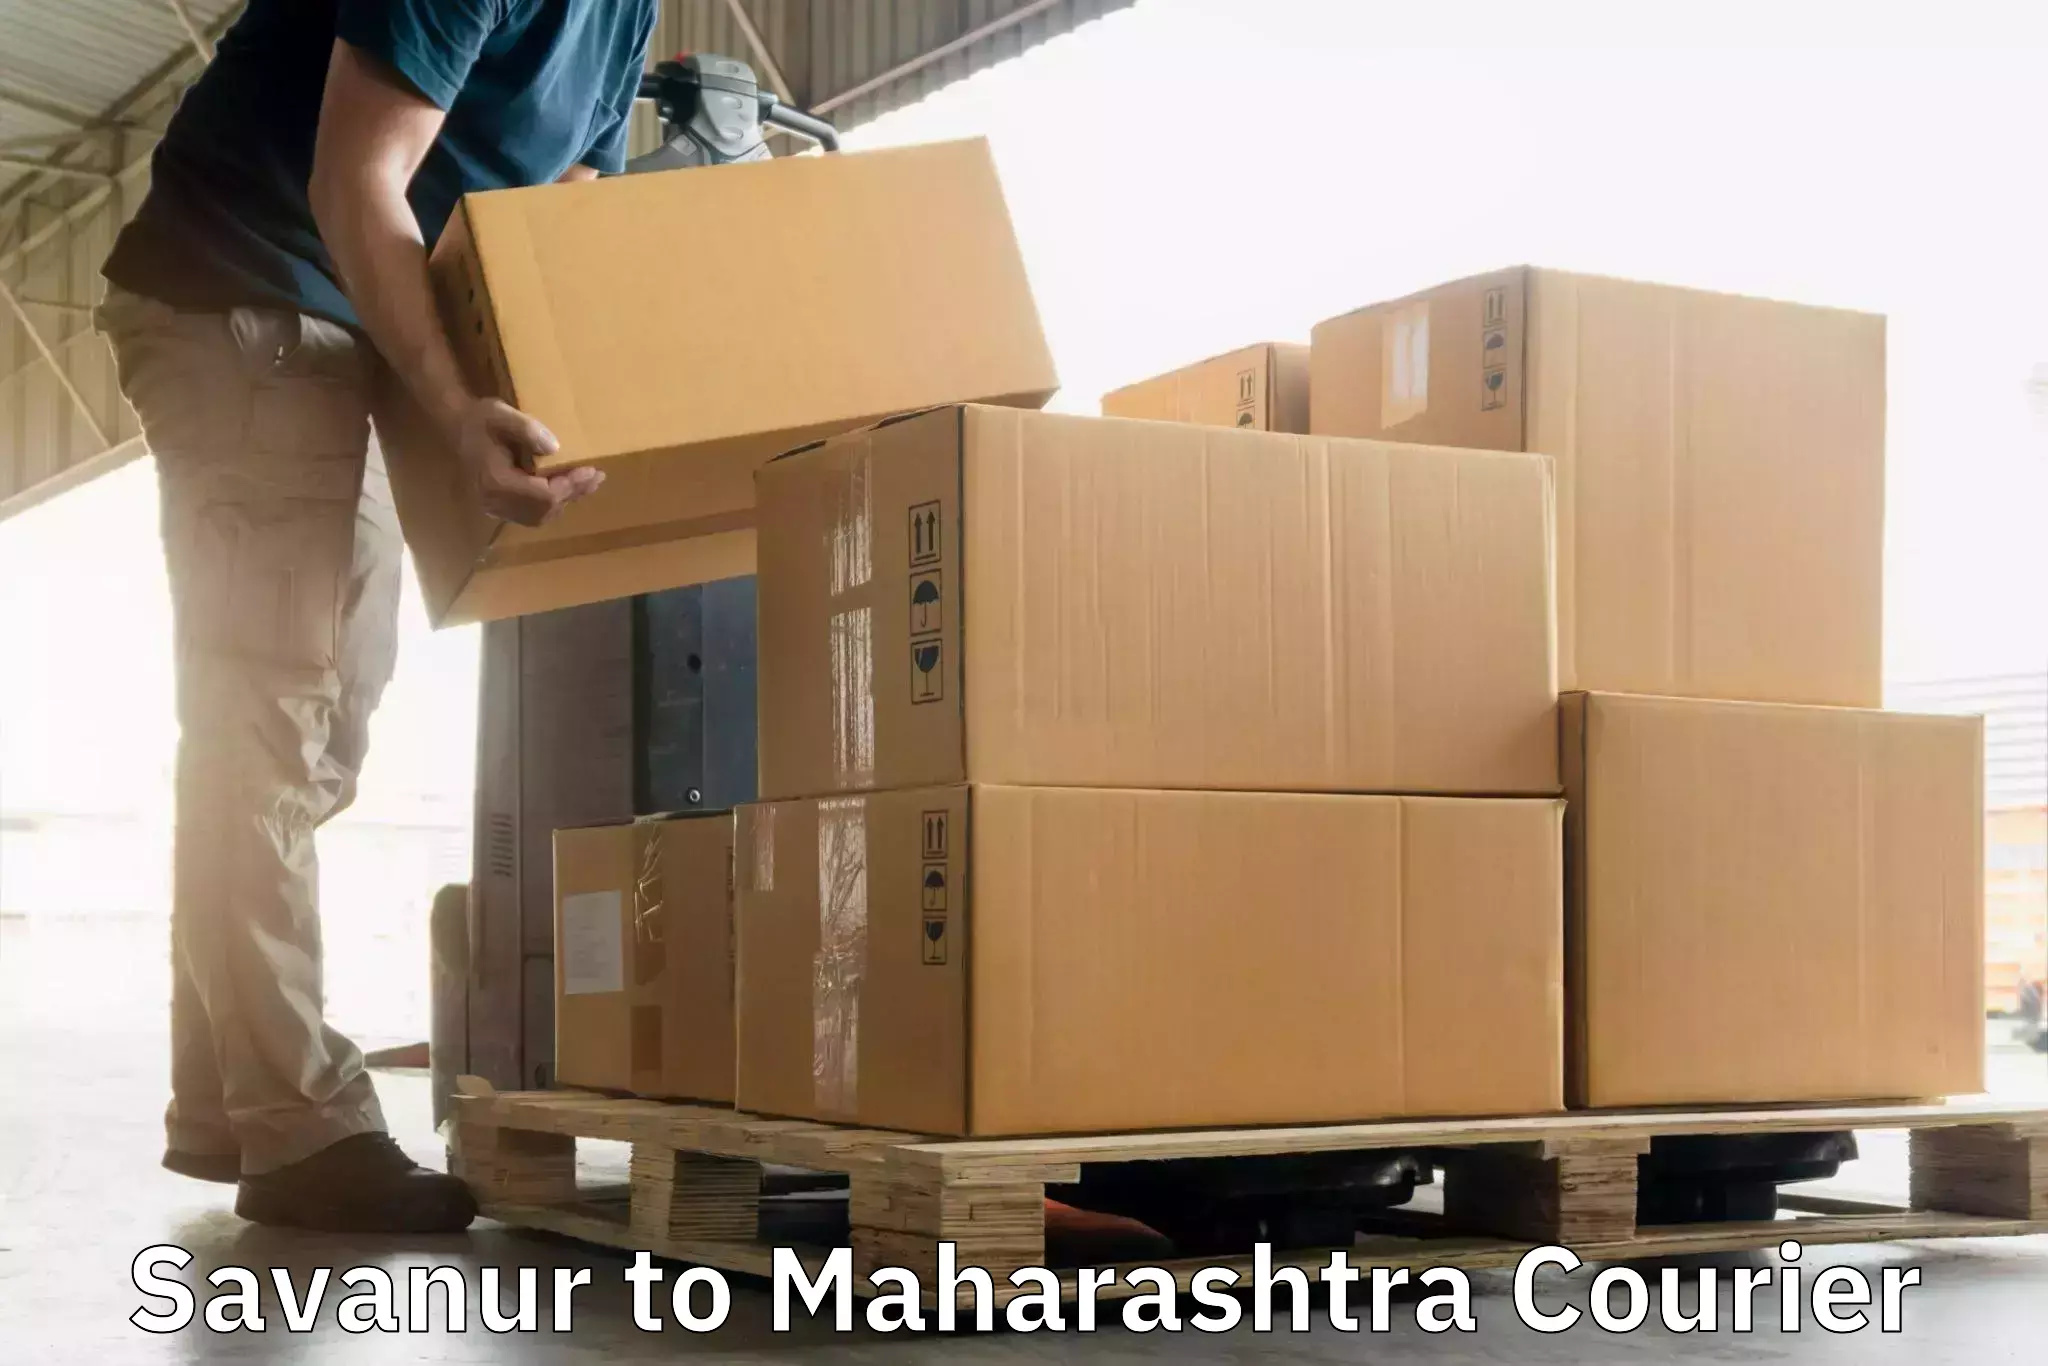 Same-day delivery options Savanur to Shrivardhan